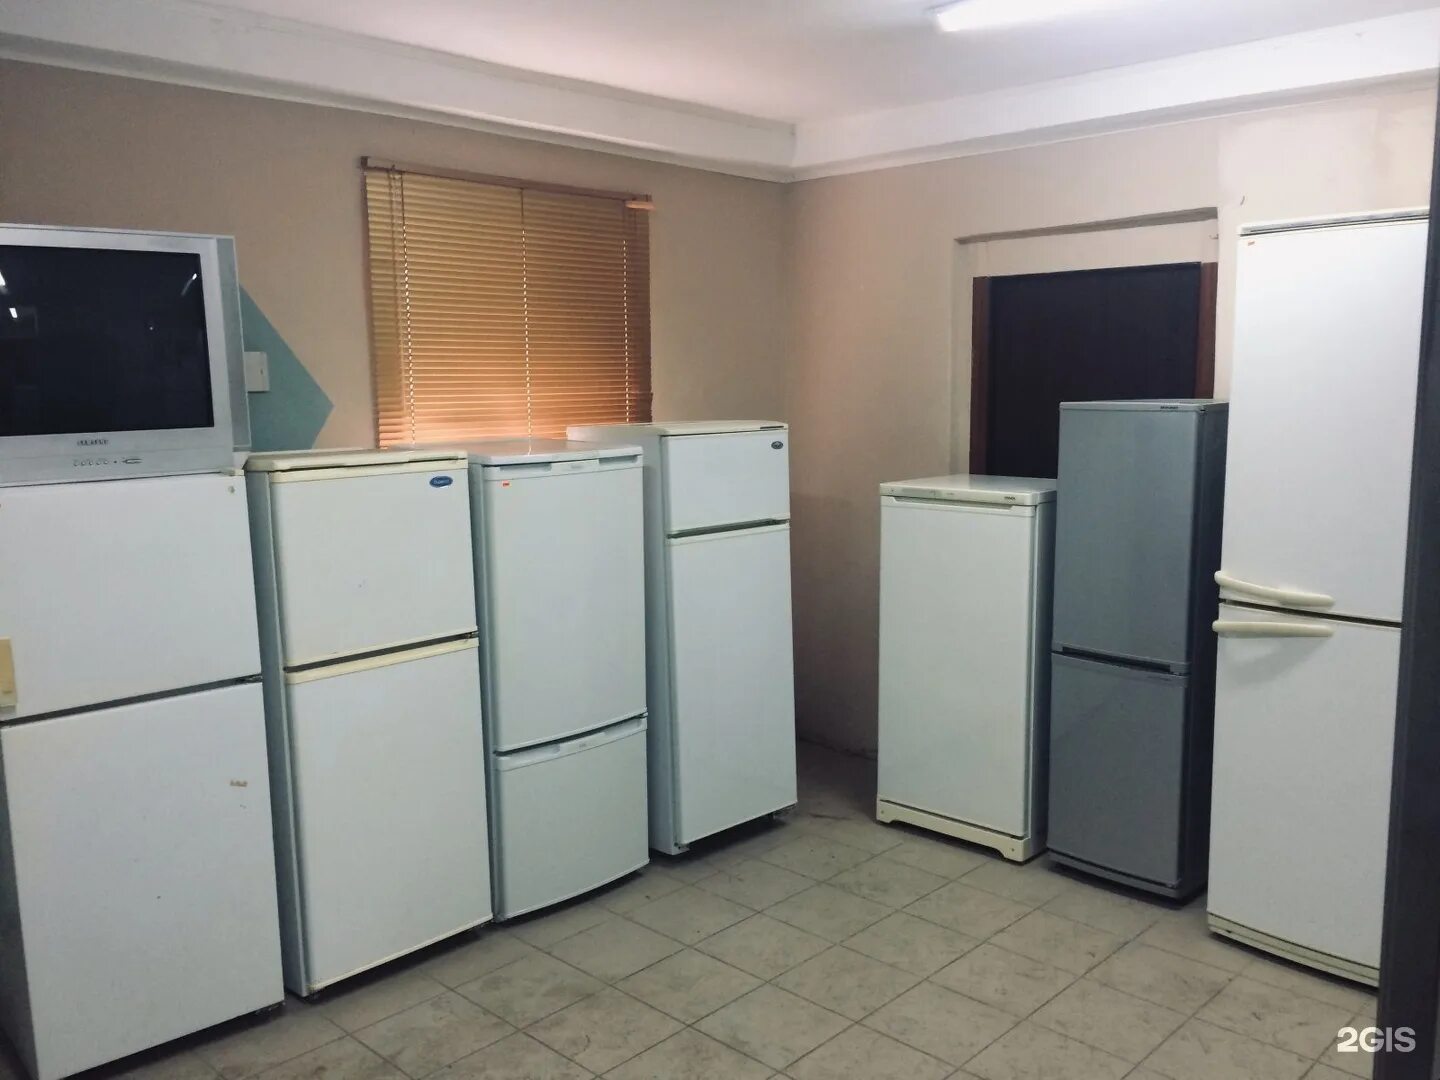 Холодильник б/у. Много холодильников б/у. Холодильник в Алматы. Купить холодильник бу на Отрадном. Холодильники б у челябинск